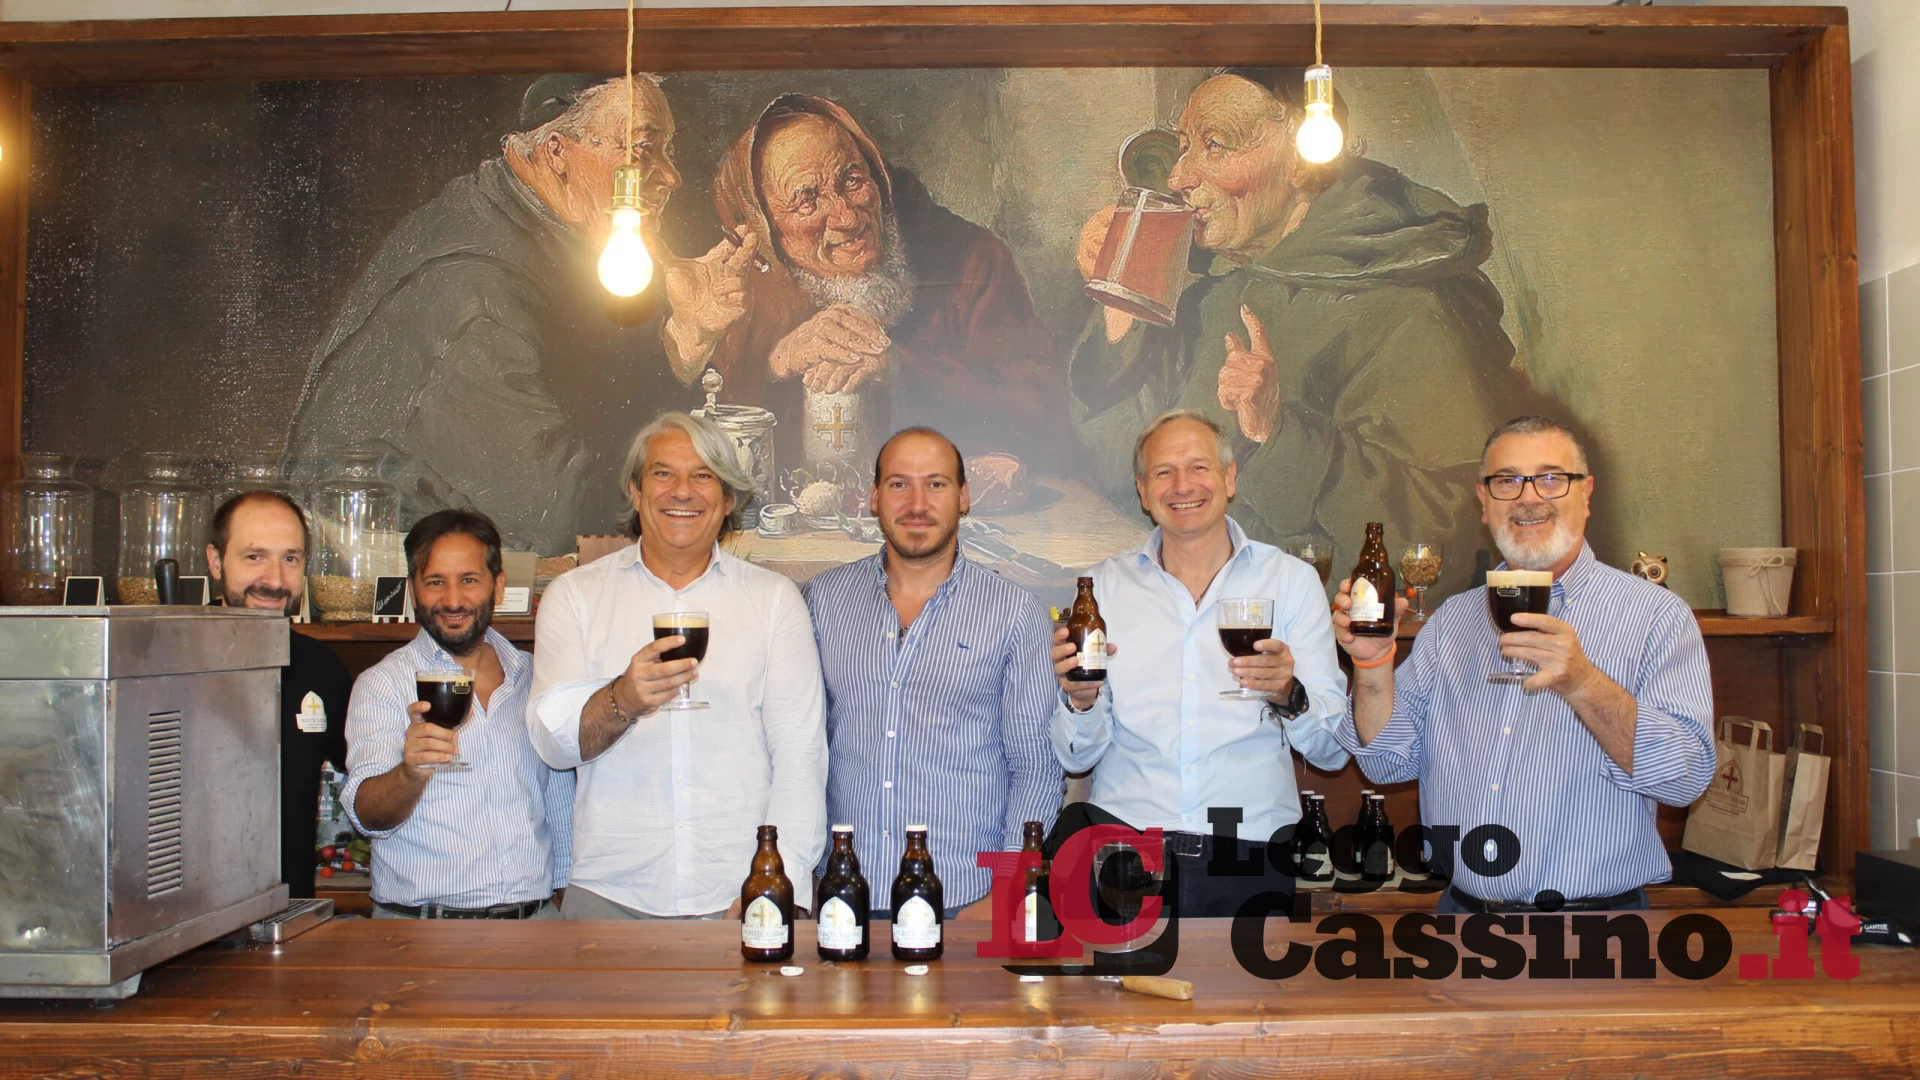 La birra Montecassino sarà distribuita in tutta Europa